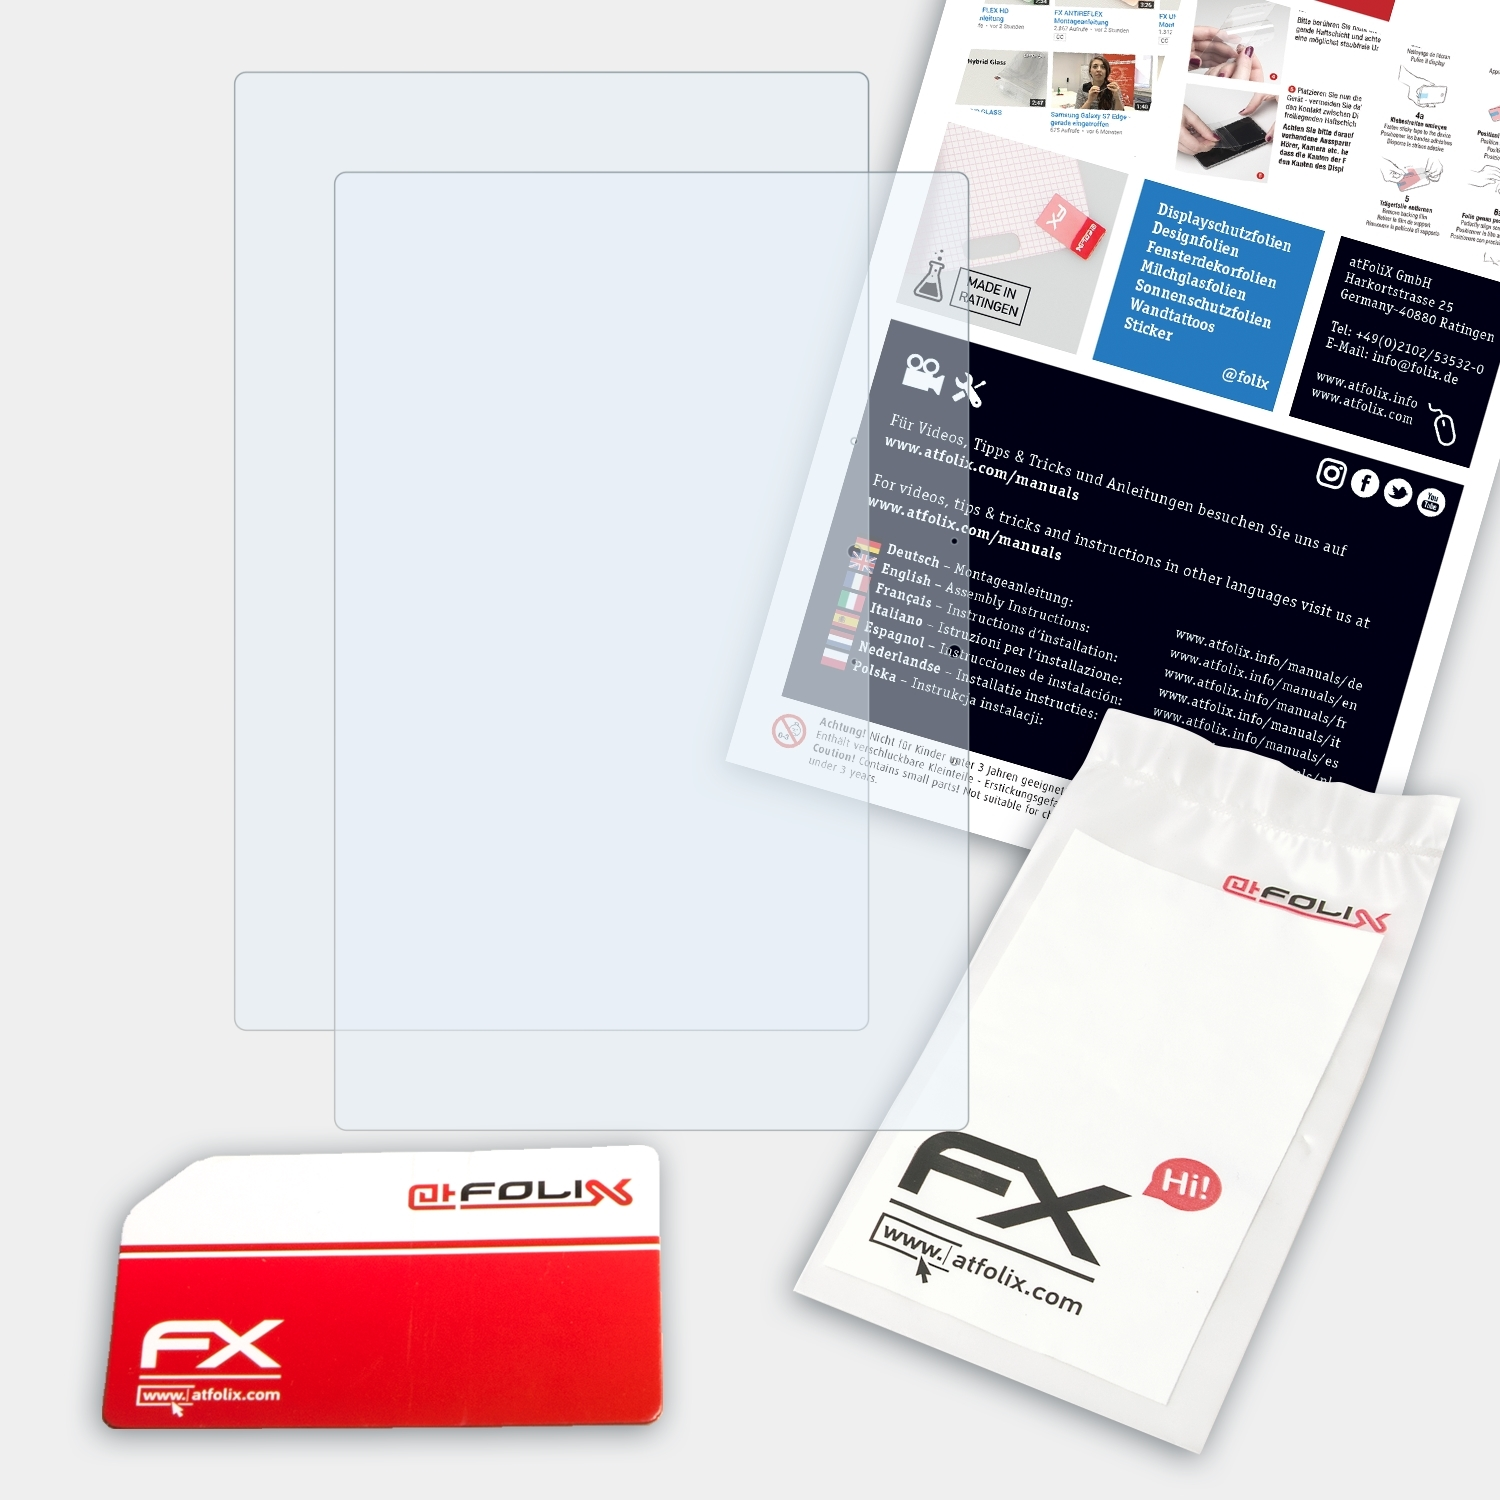 (12.5 inch)) ATFOLIX FX-Clear Xiaomi Air Book Displayschutz(für Mi 2x